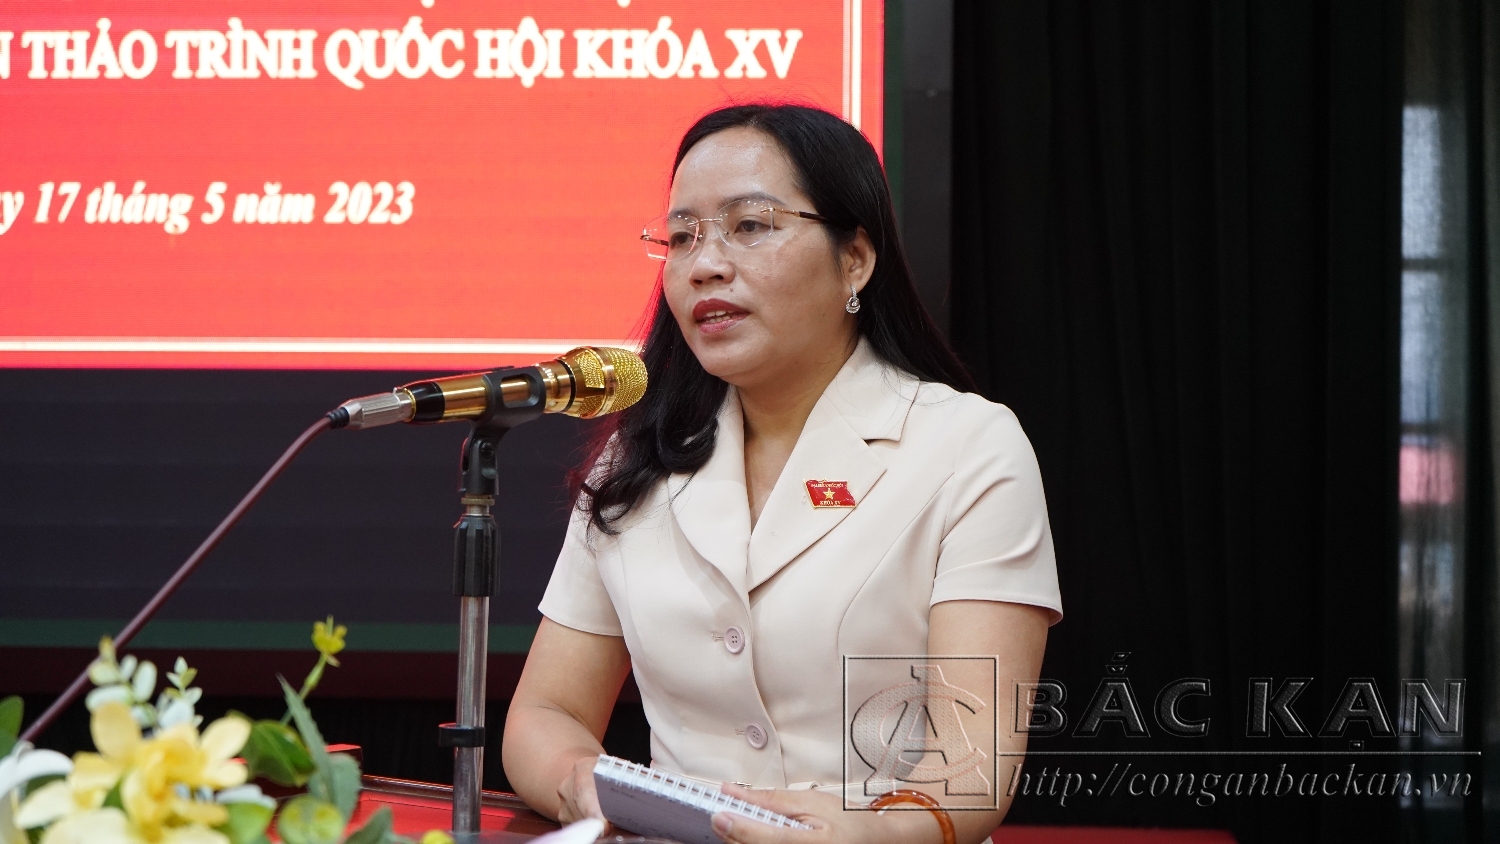 Đồng chí Hồ Thị Kim Ngân – Phó Trưởng Đoàn đại biểu Quốc hội khoá XV đơn vị tỉnh Bắc Kạn phát biểu tại Hội thảo